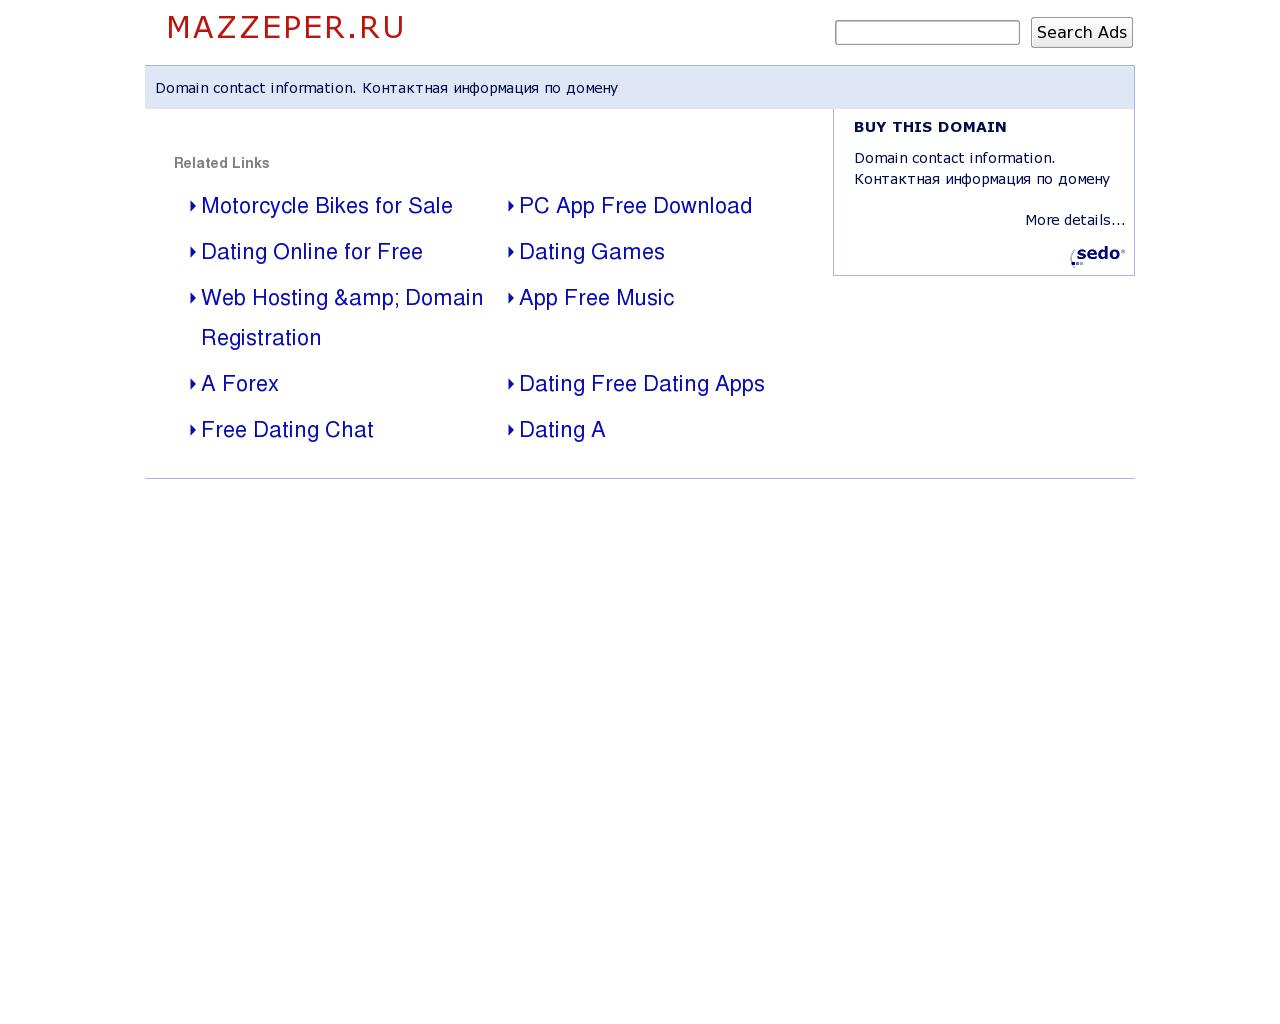 Изображение сайта mazzeper.ru в разрешении 1280x1024